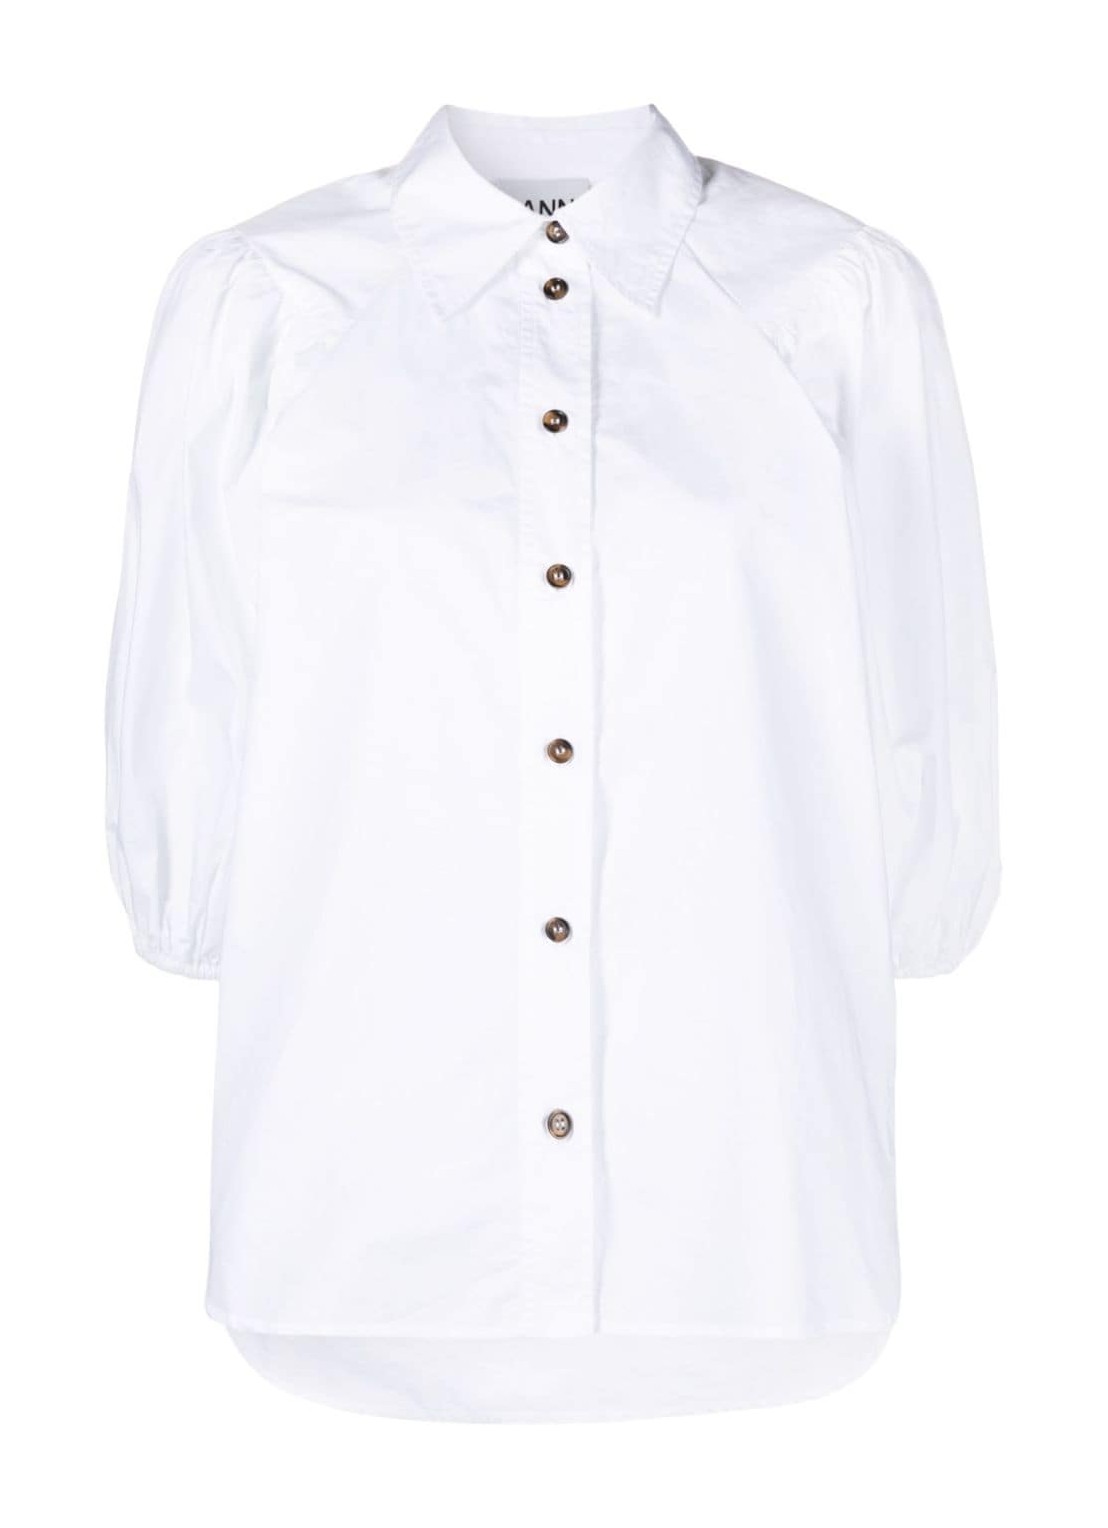 Camiseria ganni shirt woman cotton poplin shirt f8881 151 talla 40
 